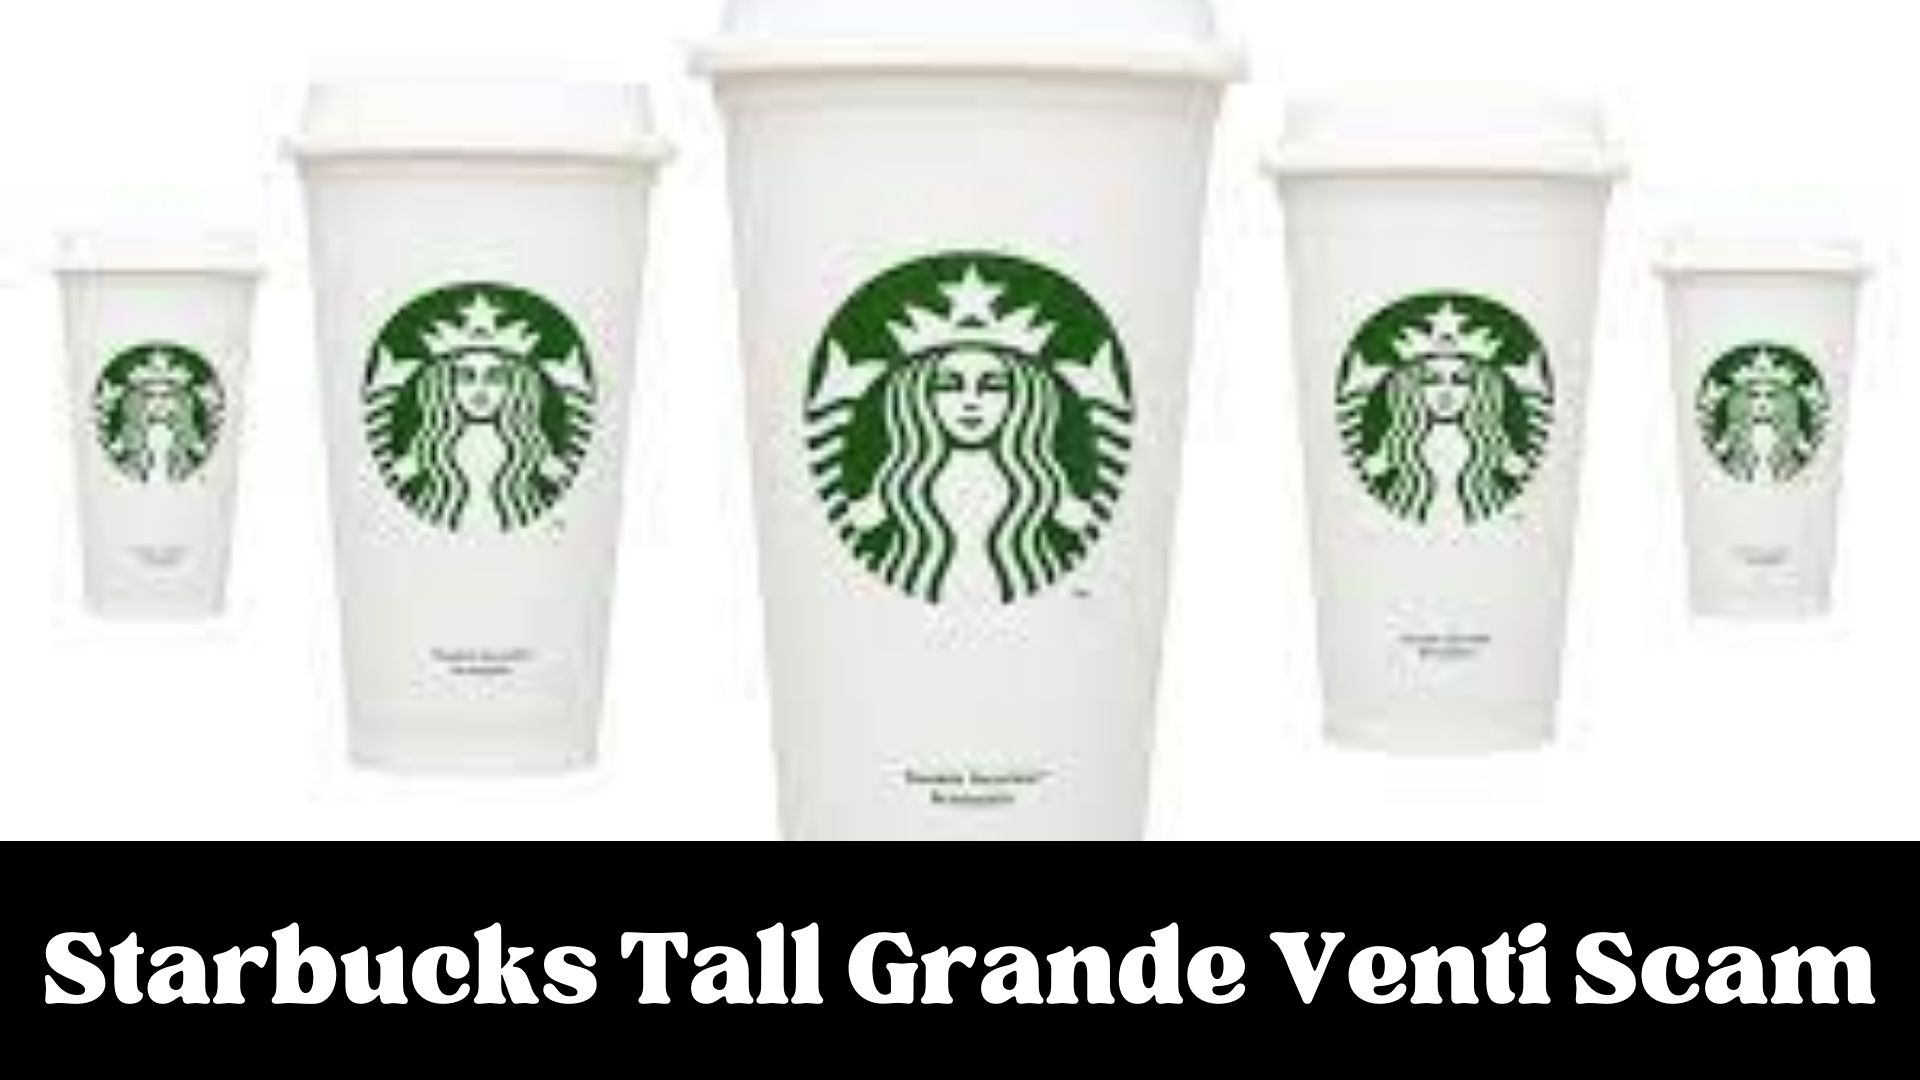 Starbucks Tall Grande Venti Scam